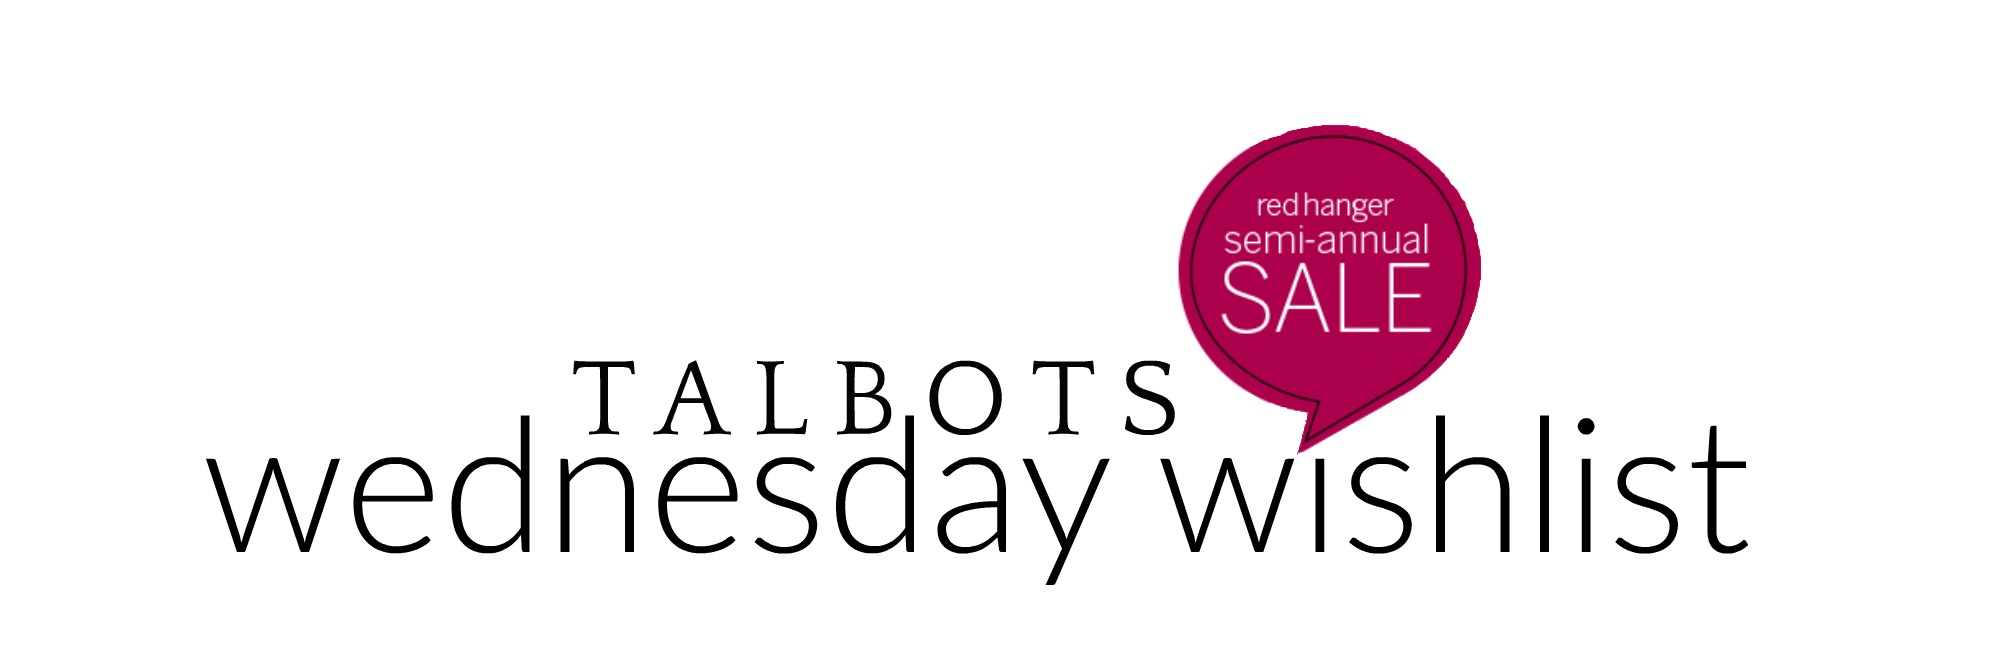 Wednesday Wishlist: Talbots Redhanger Sale | Something Good